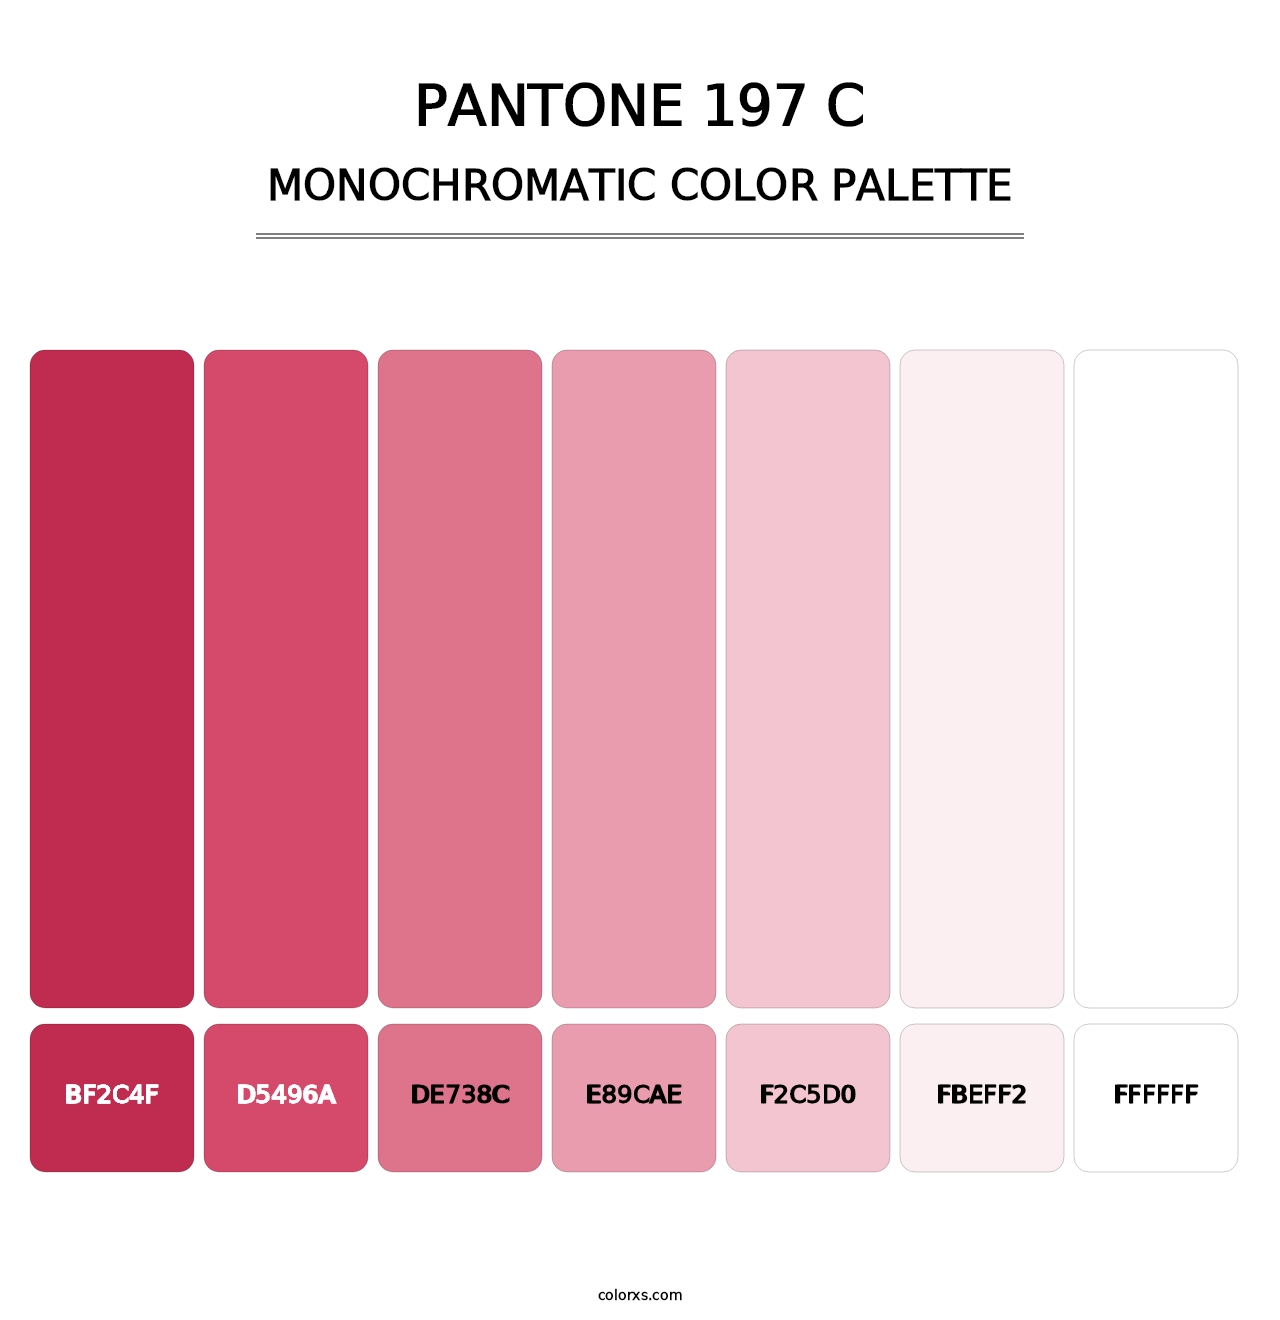 PANTONE 197 C - Monochromatic Color Palette